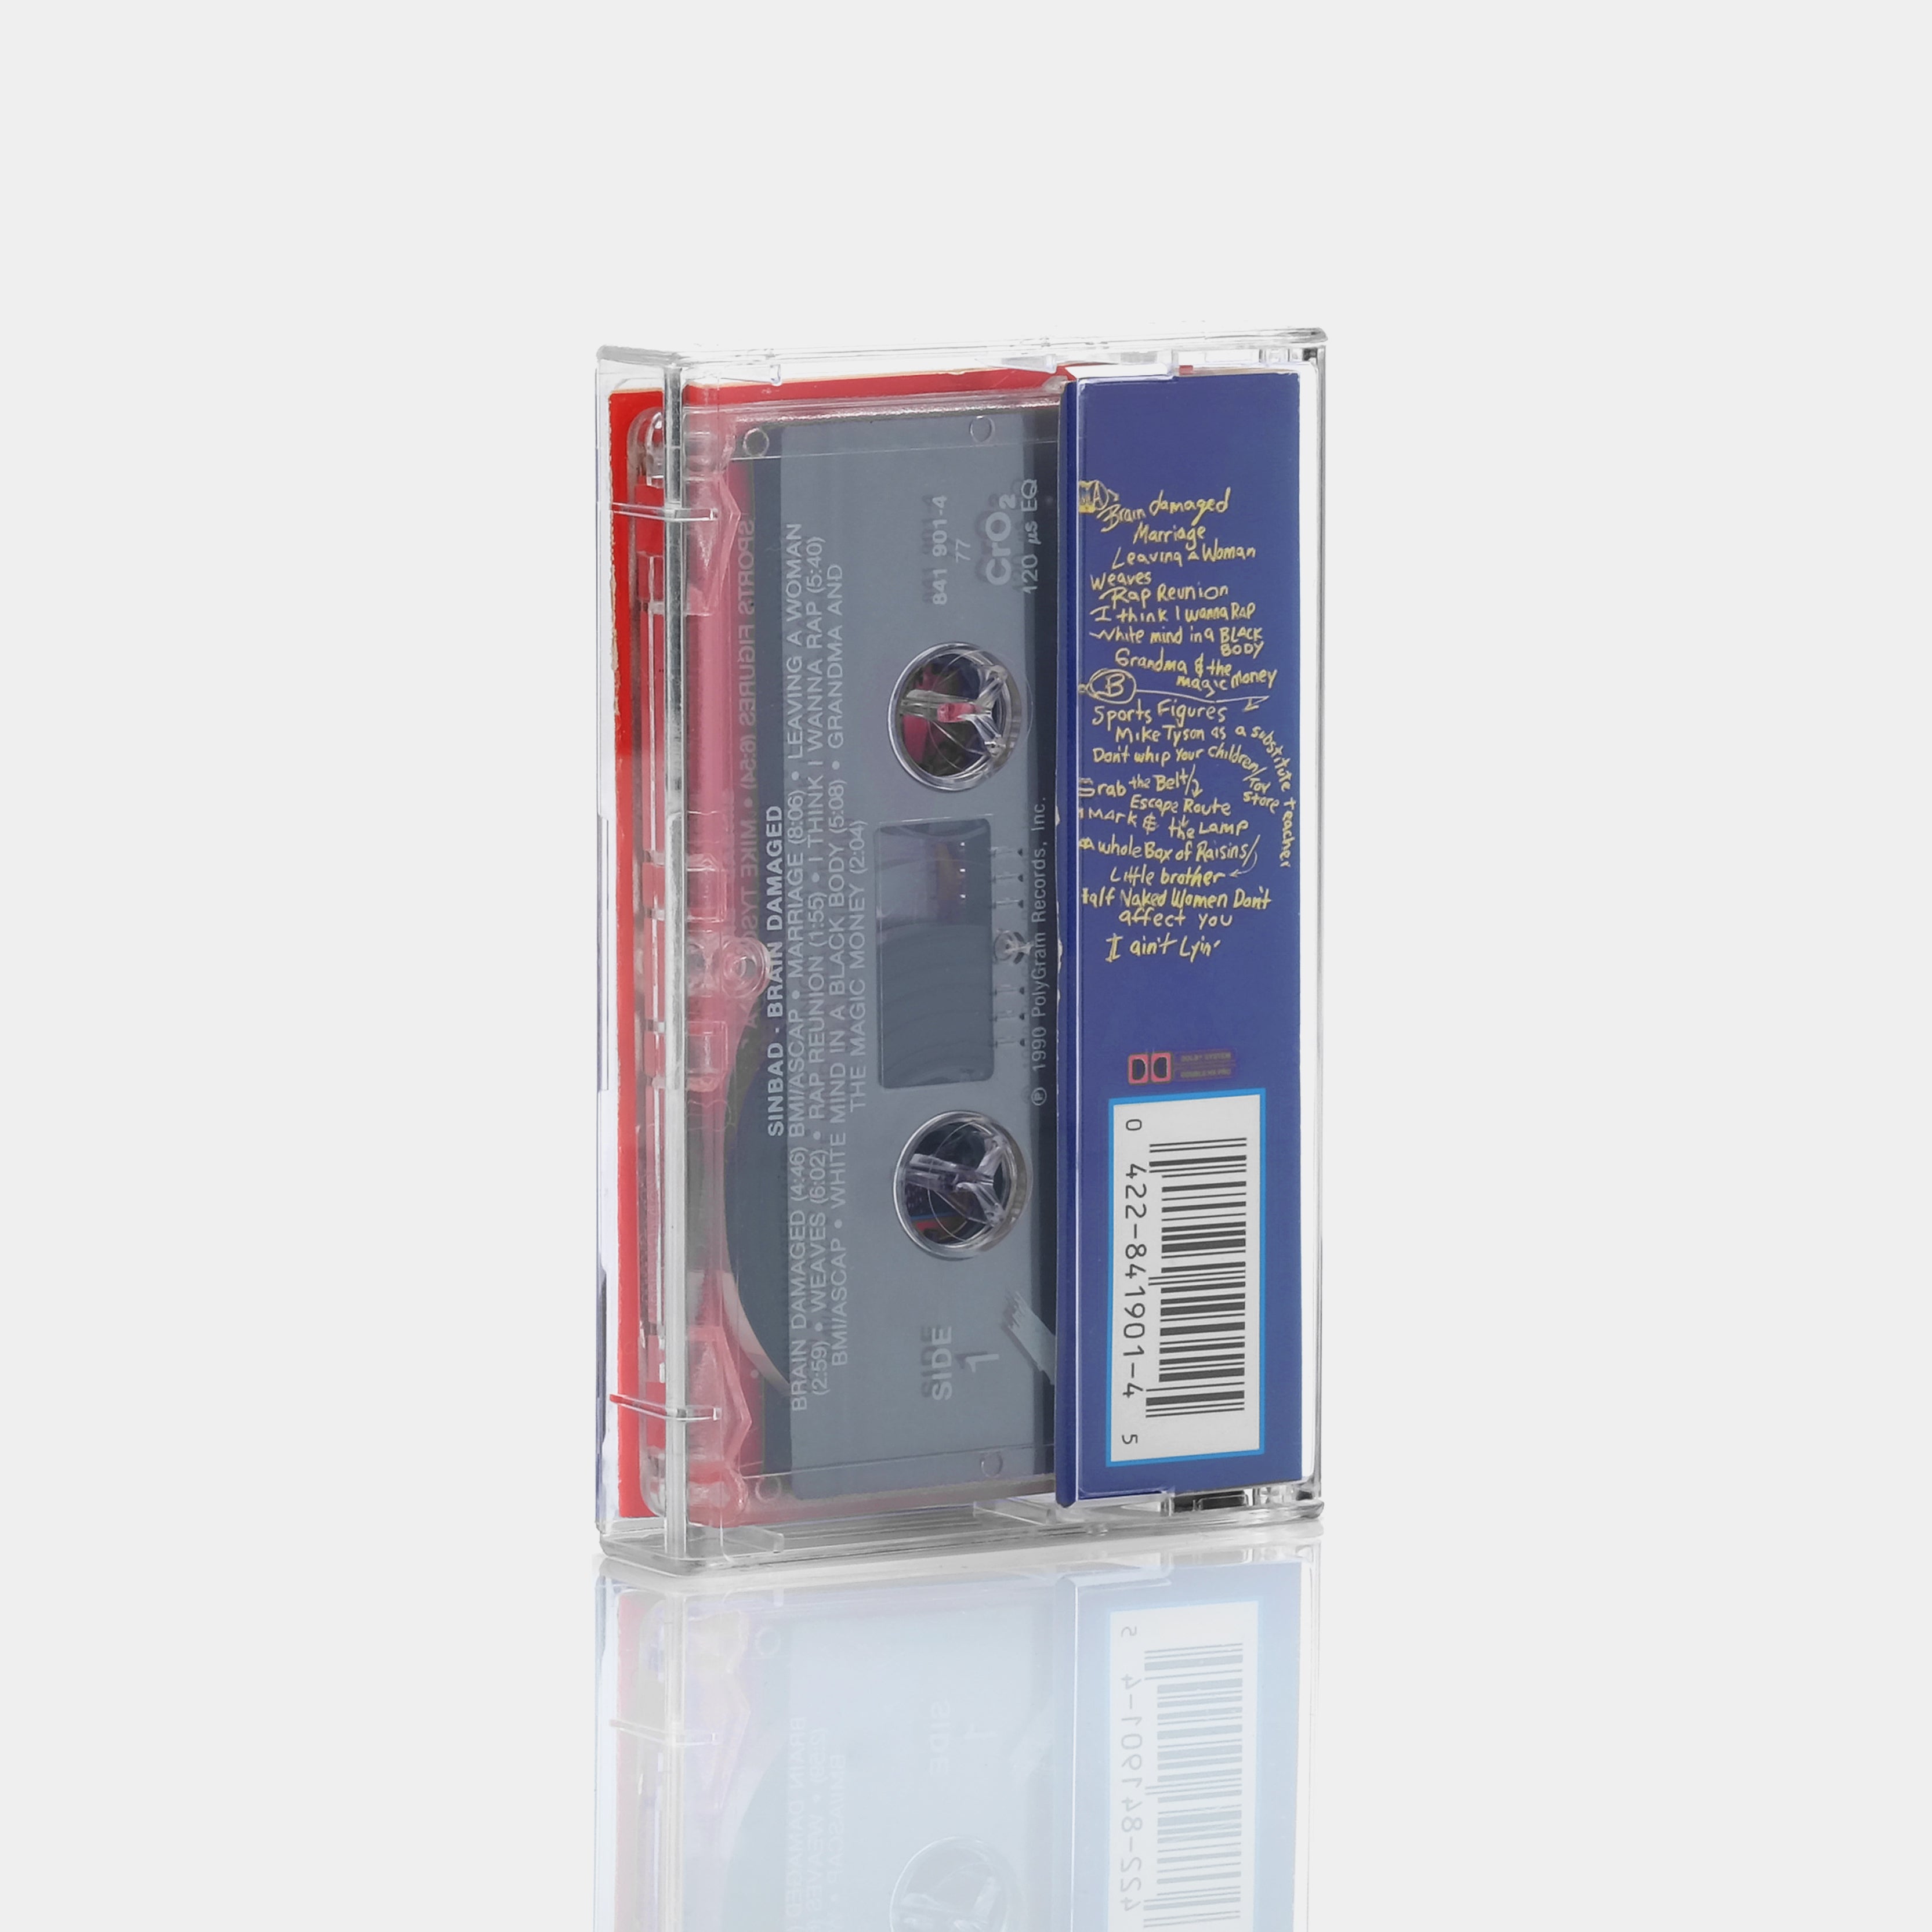 Sinbad - Brain Damaged Cassette Tape